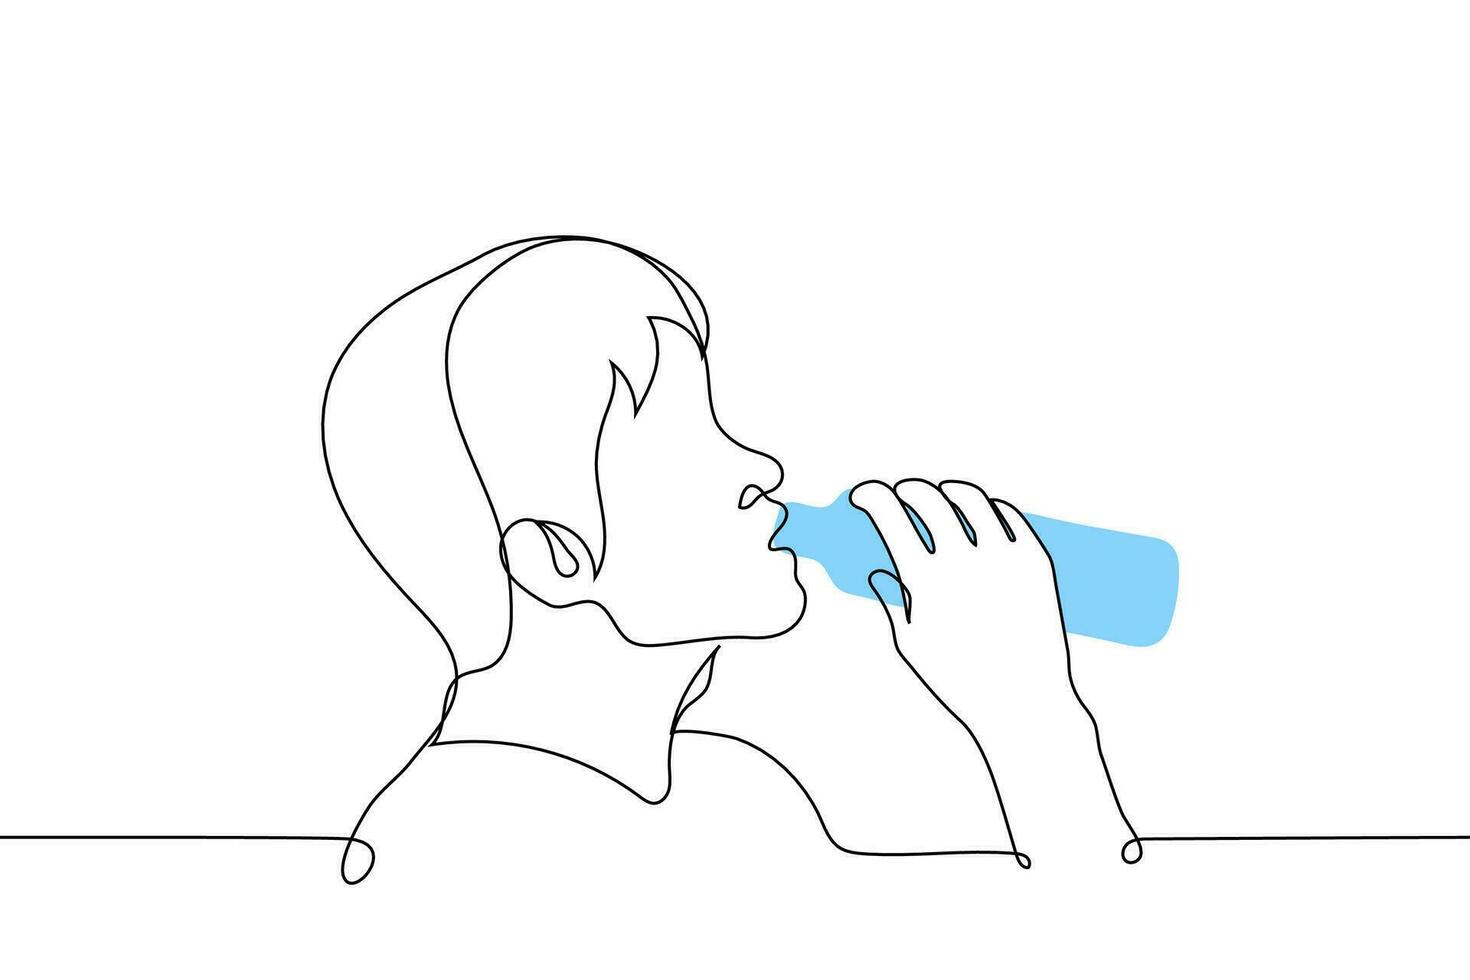 homme en buvant l'eau de une bouteille - un ligne dessin vecteur. concept Masculin profil portrait de une la soif extincteur buveur de une Plastique bouteille vecteur